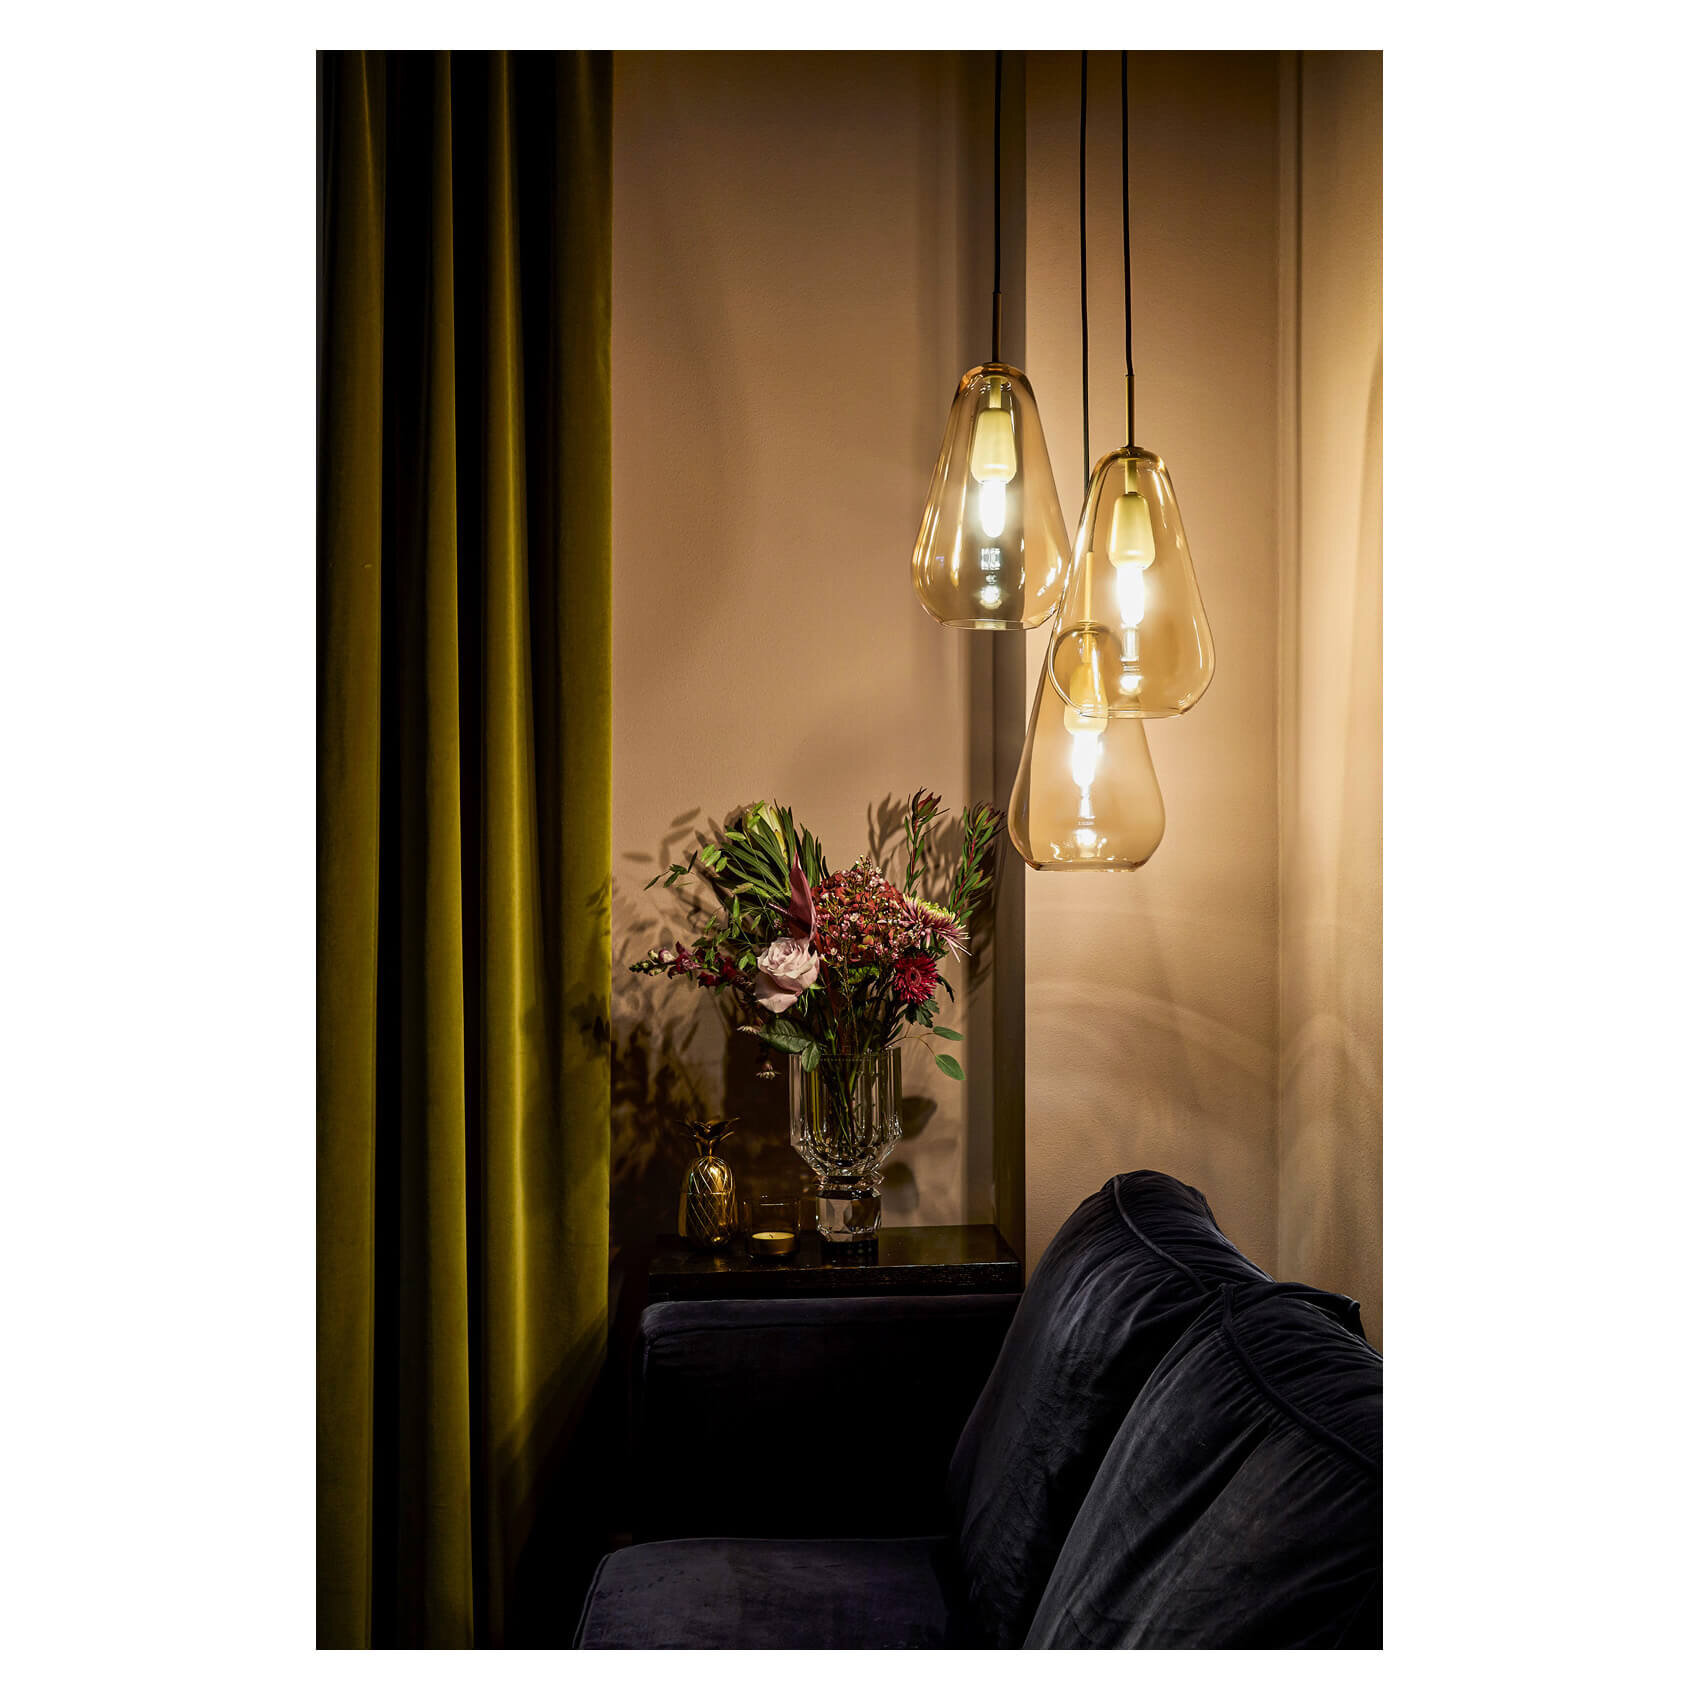 三盞 Nuura Anoli 金色玻璃吊燈用於客廳沙發旁